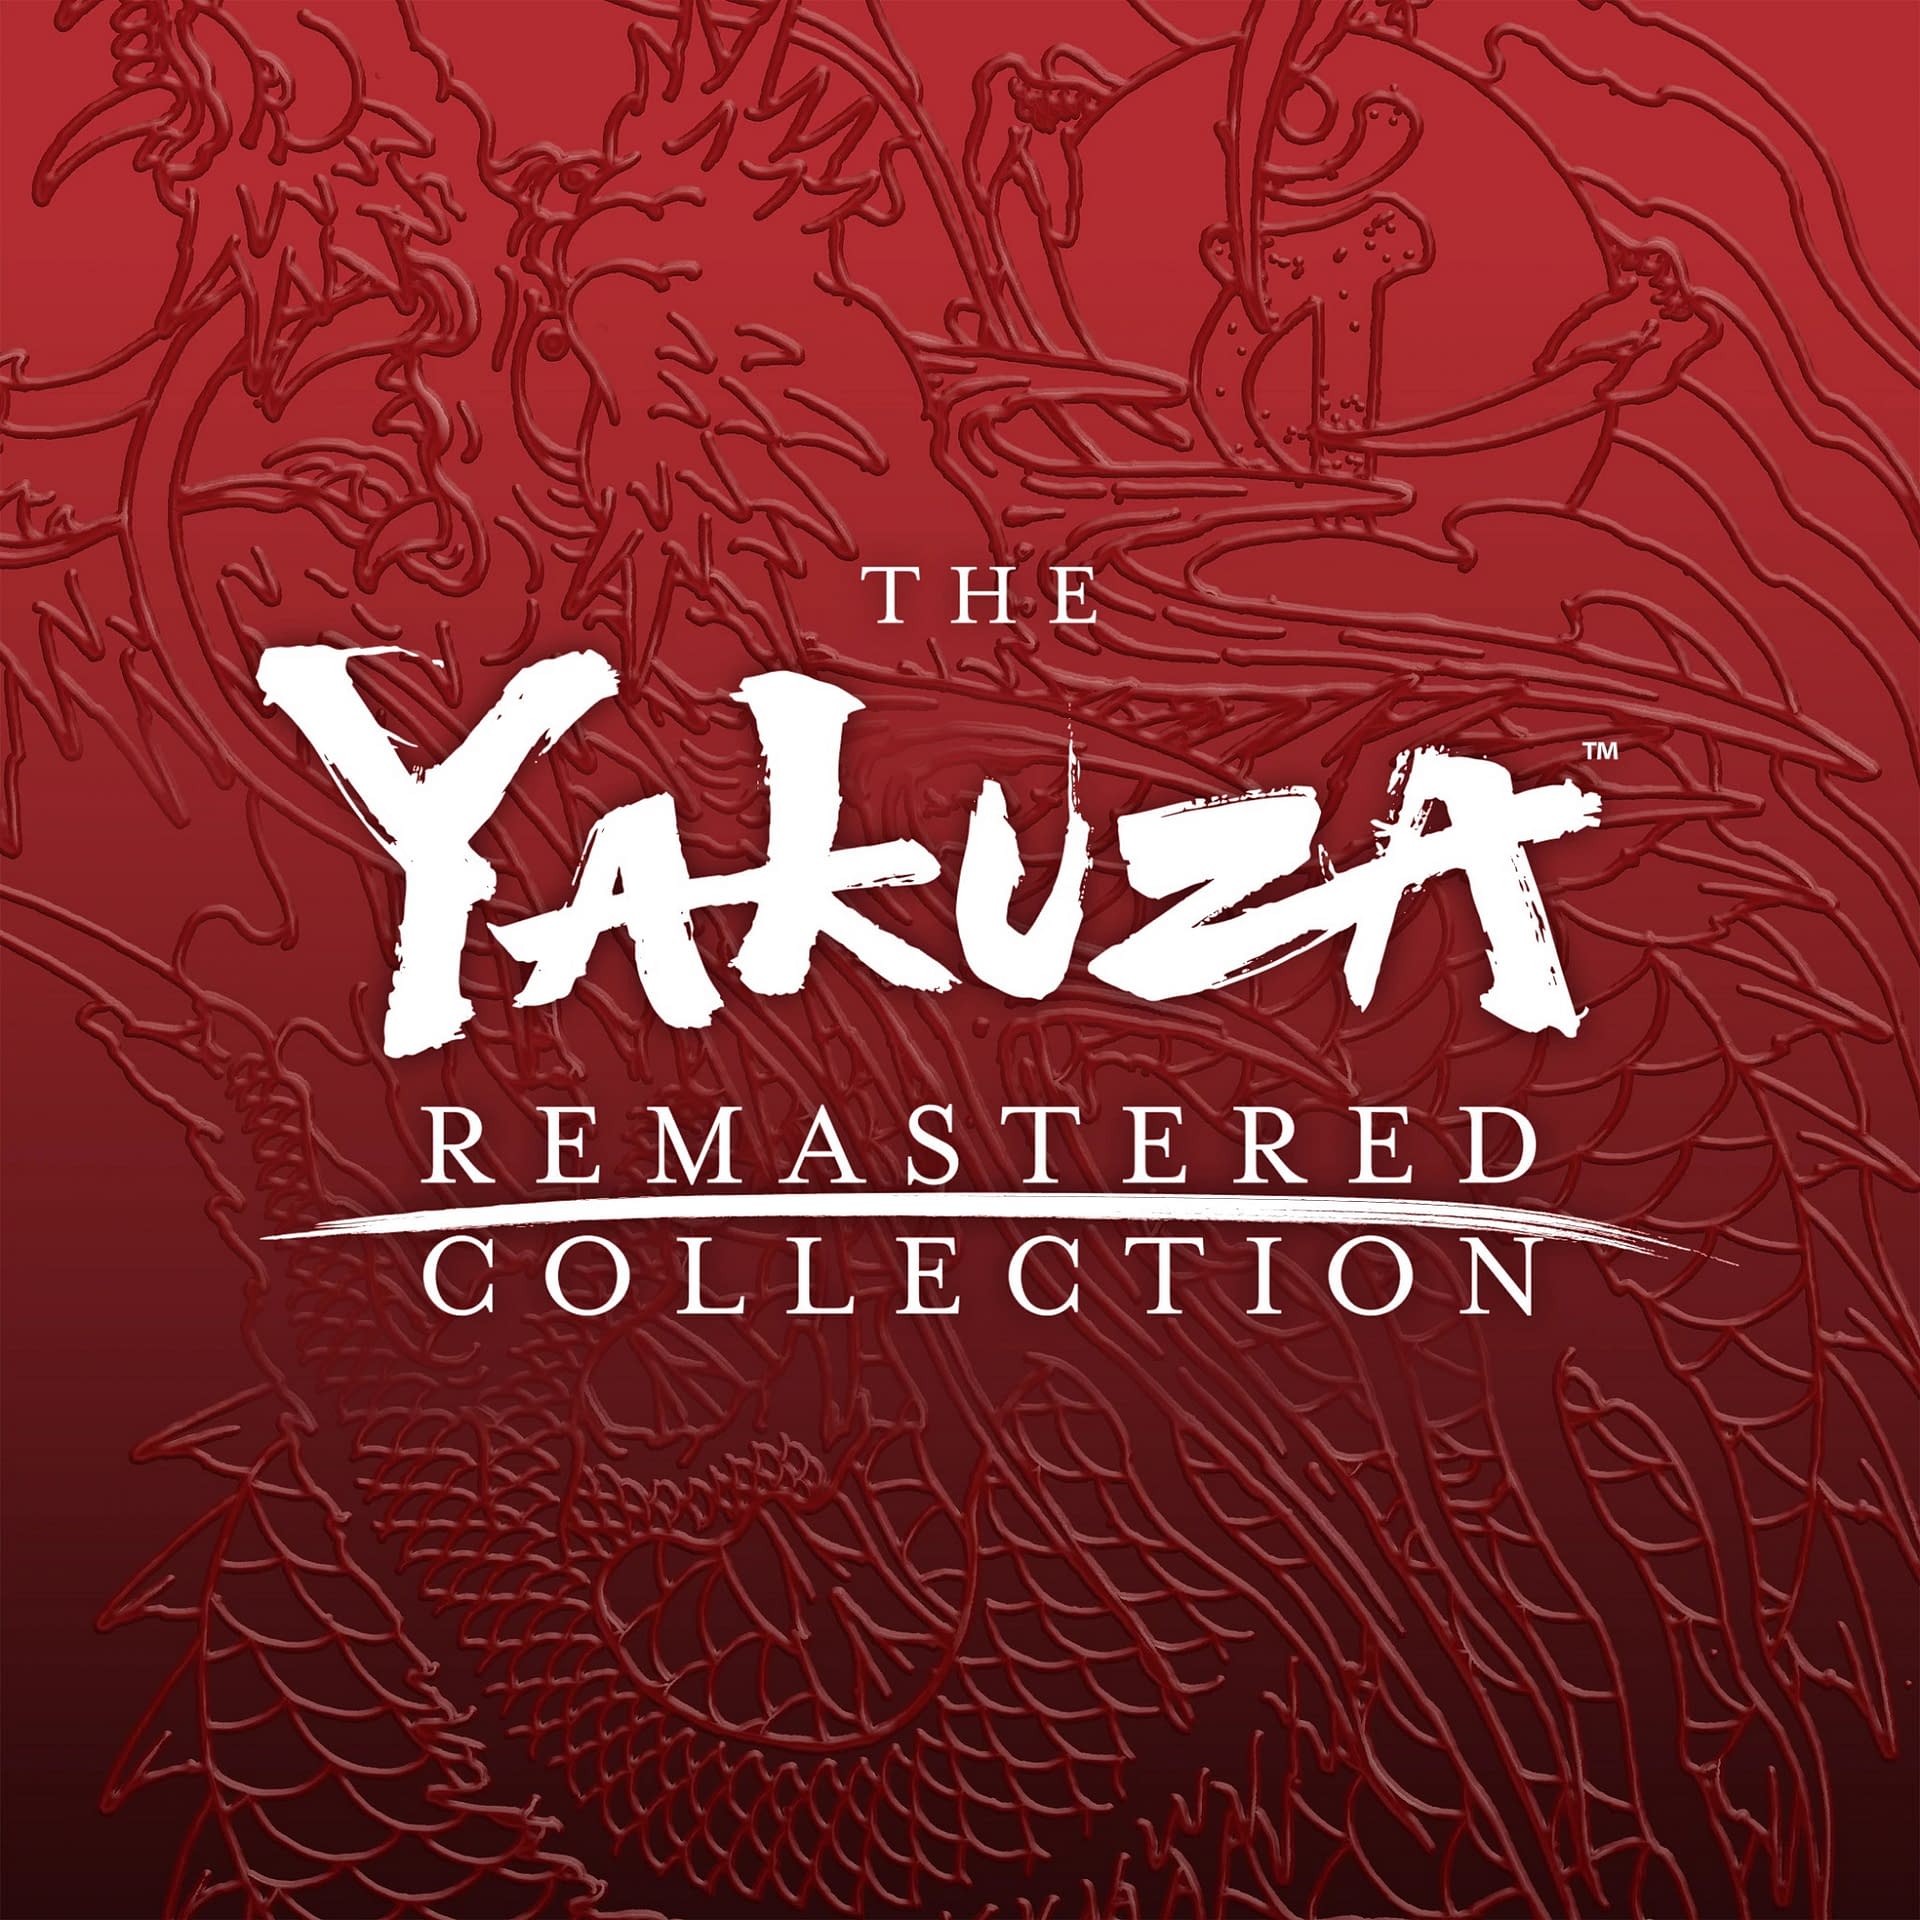 Yakuza collection